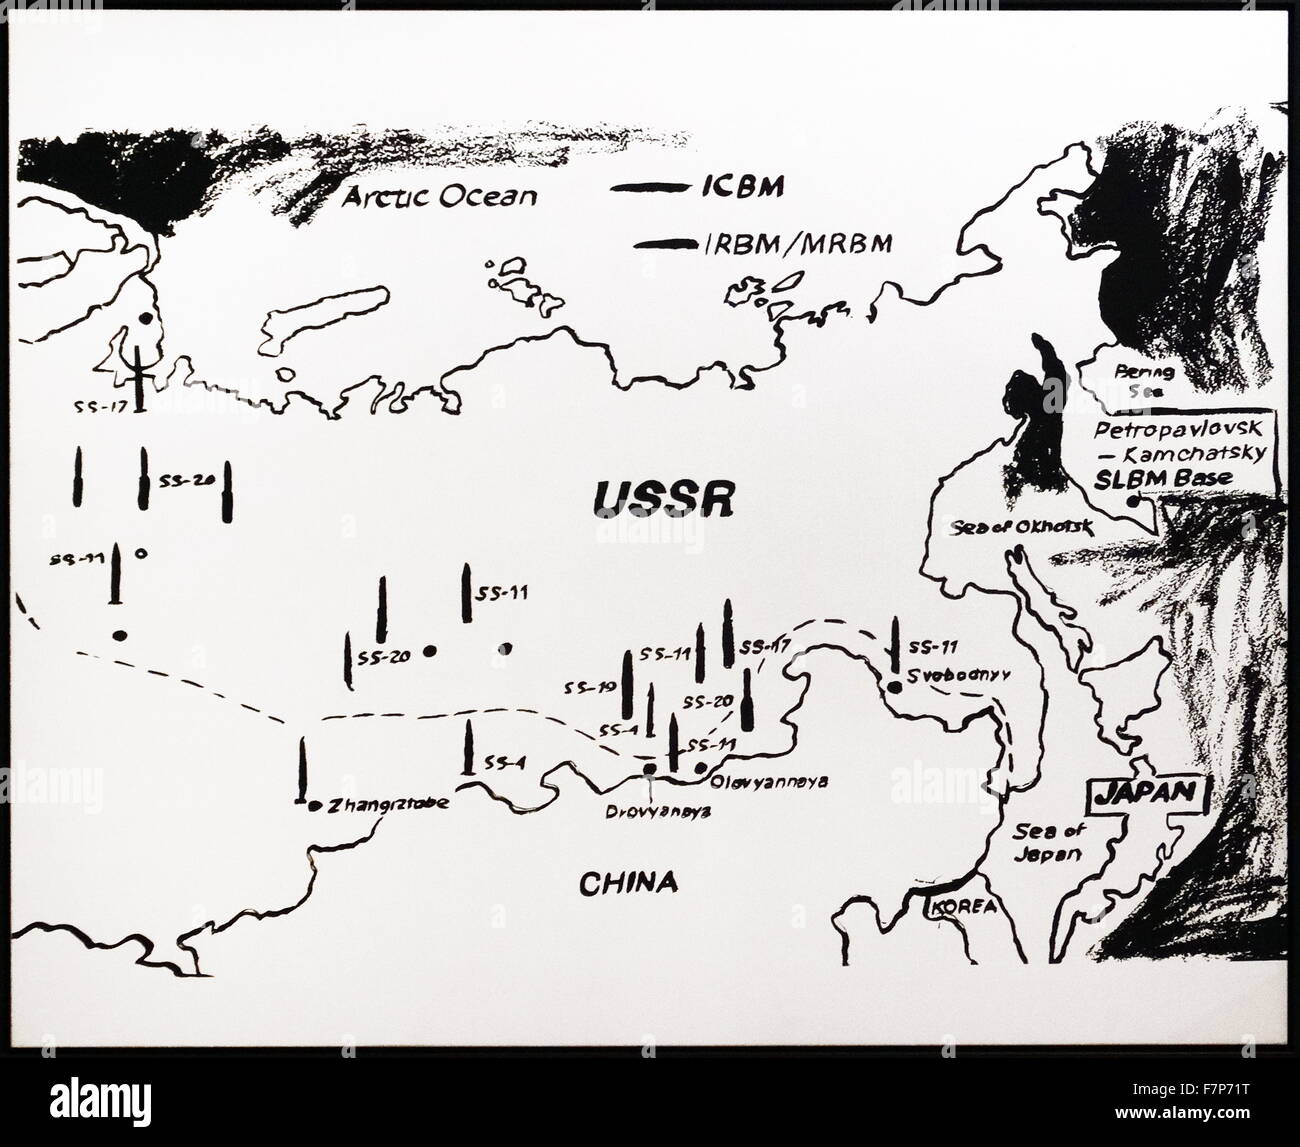 Site de l'Est de l'URSS. Des bases de missiles, par Andy Warhol (1928 - 1987) . L'artiste américain qui a été une des figures de l'art visuel mouvement connu sous le nom de pop art. Banque D'Images